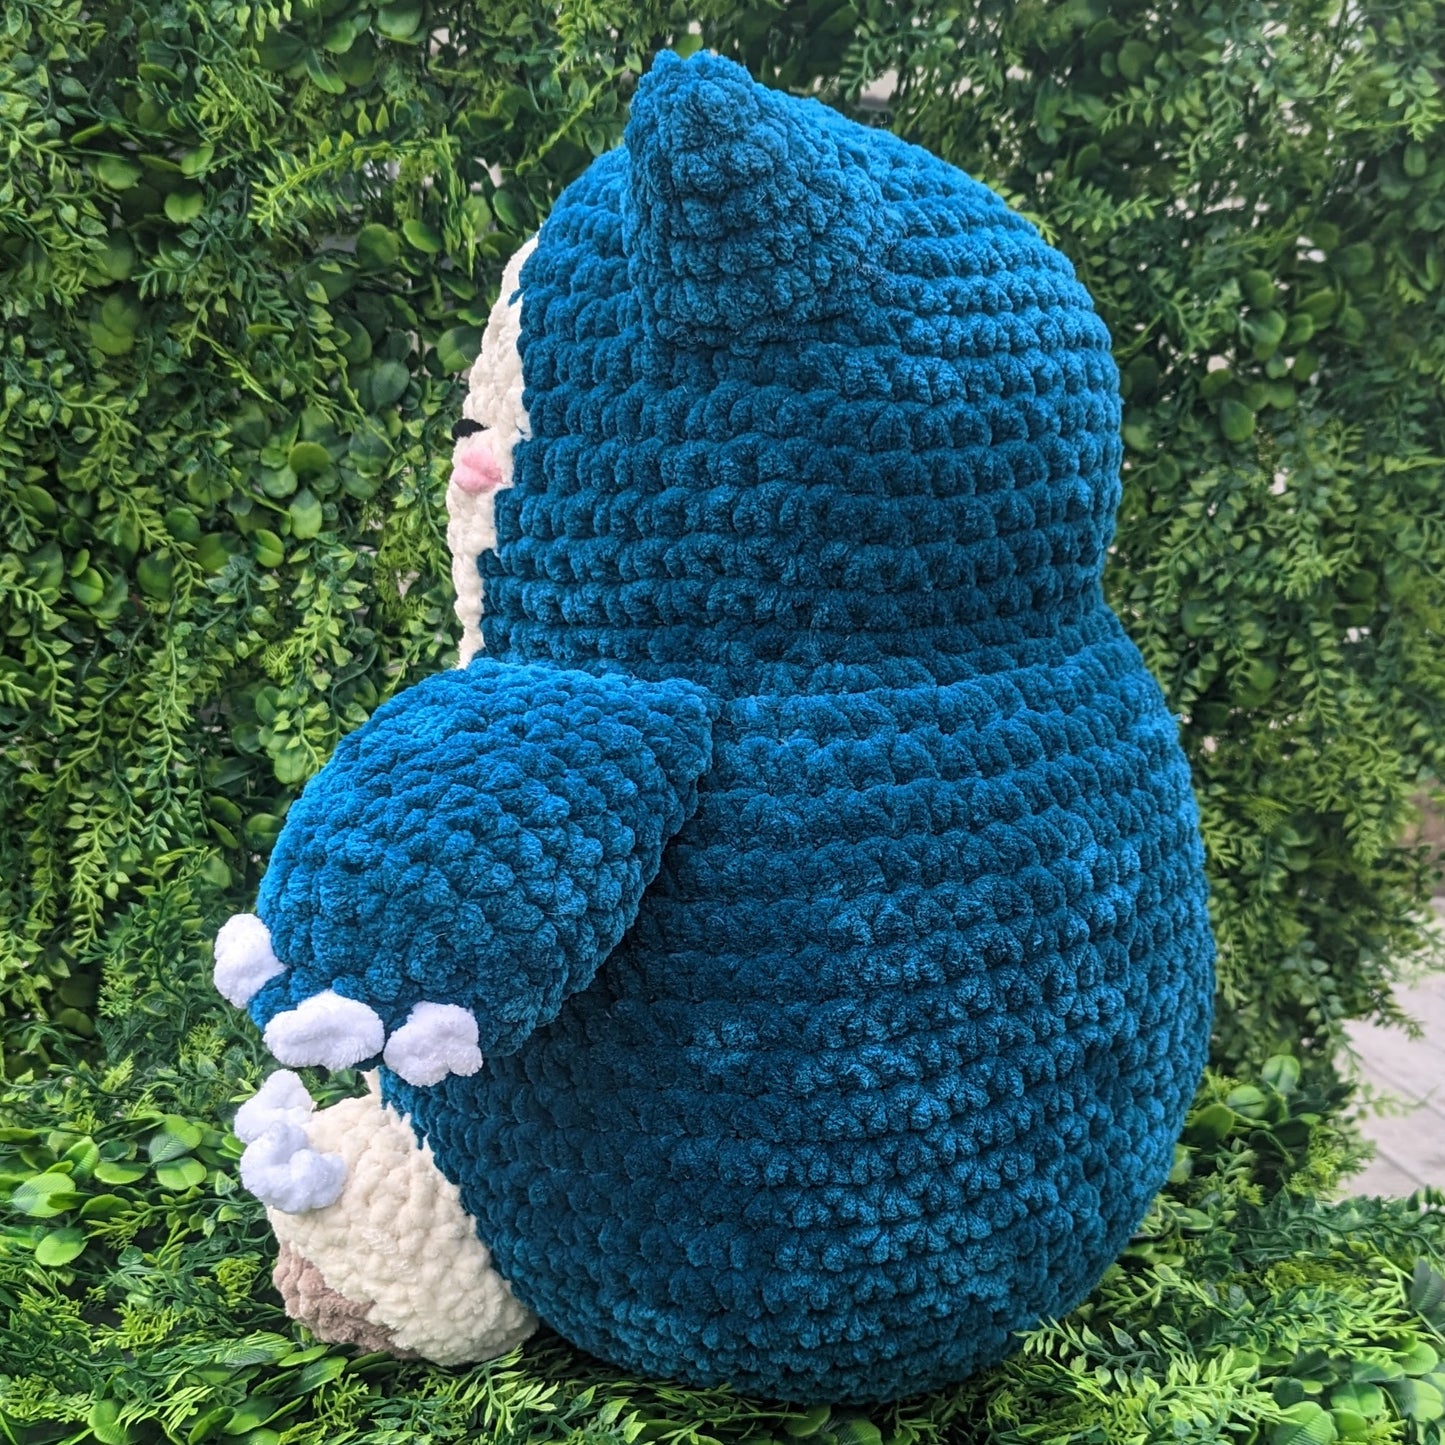 Giant Snoring Sleepy Monster Crochet Plushie [Archived]